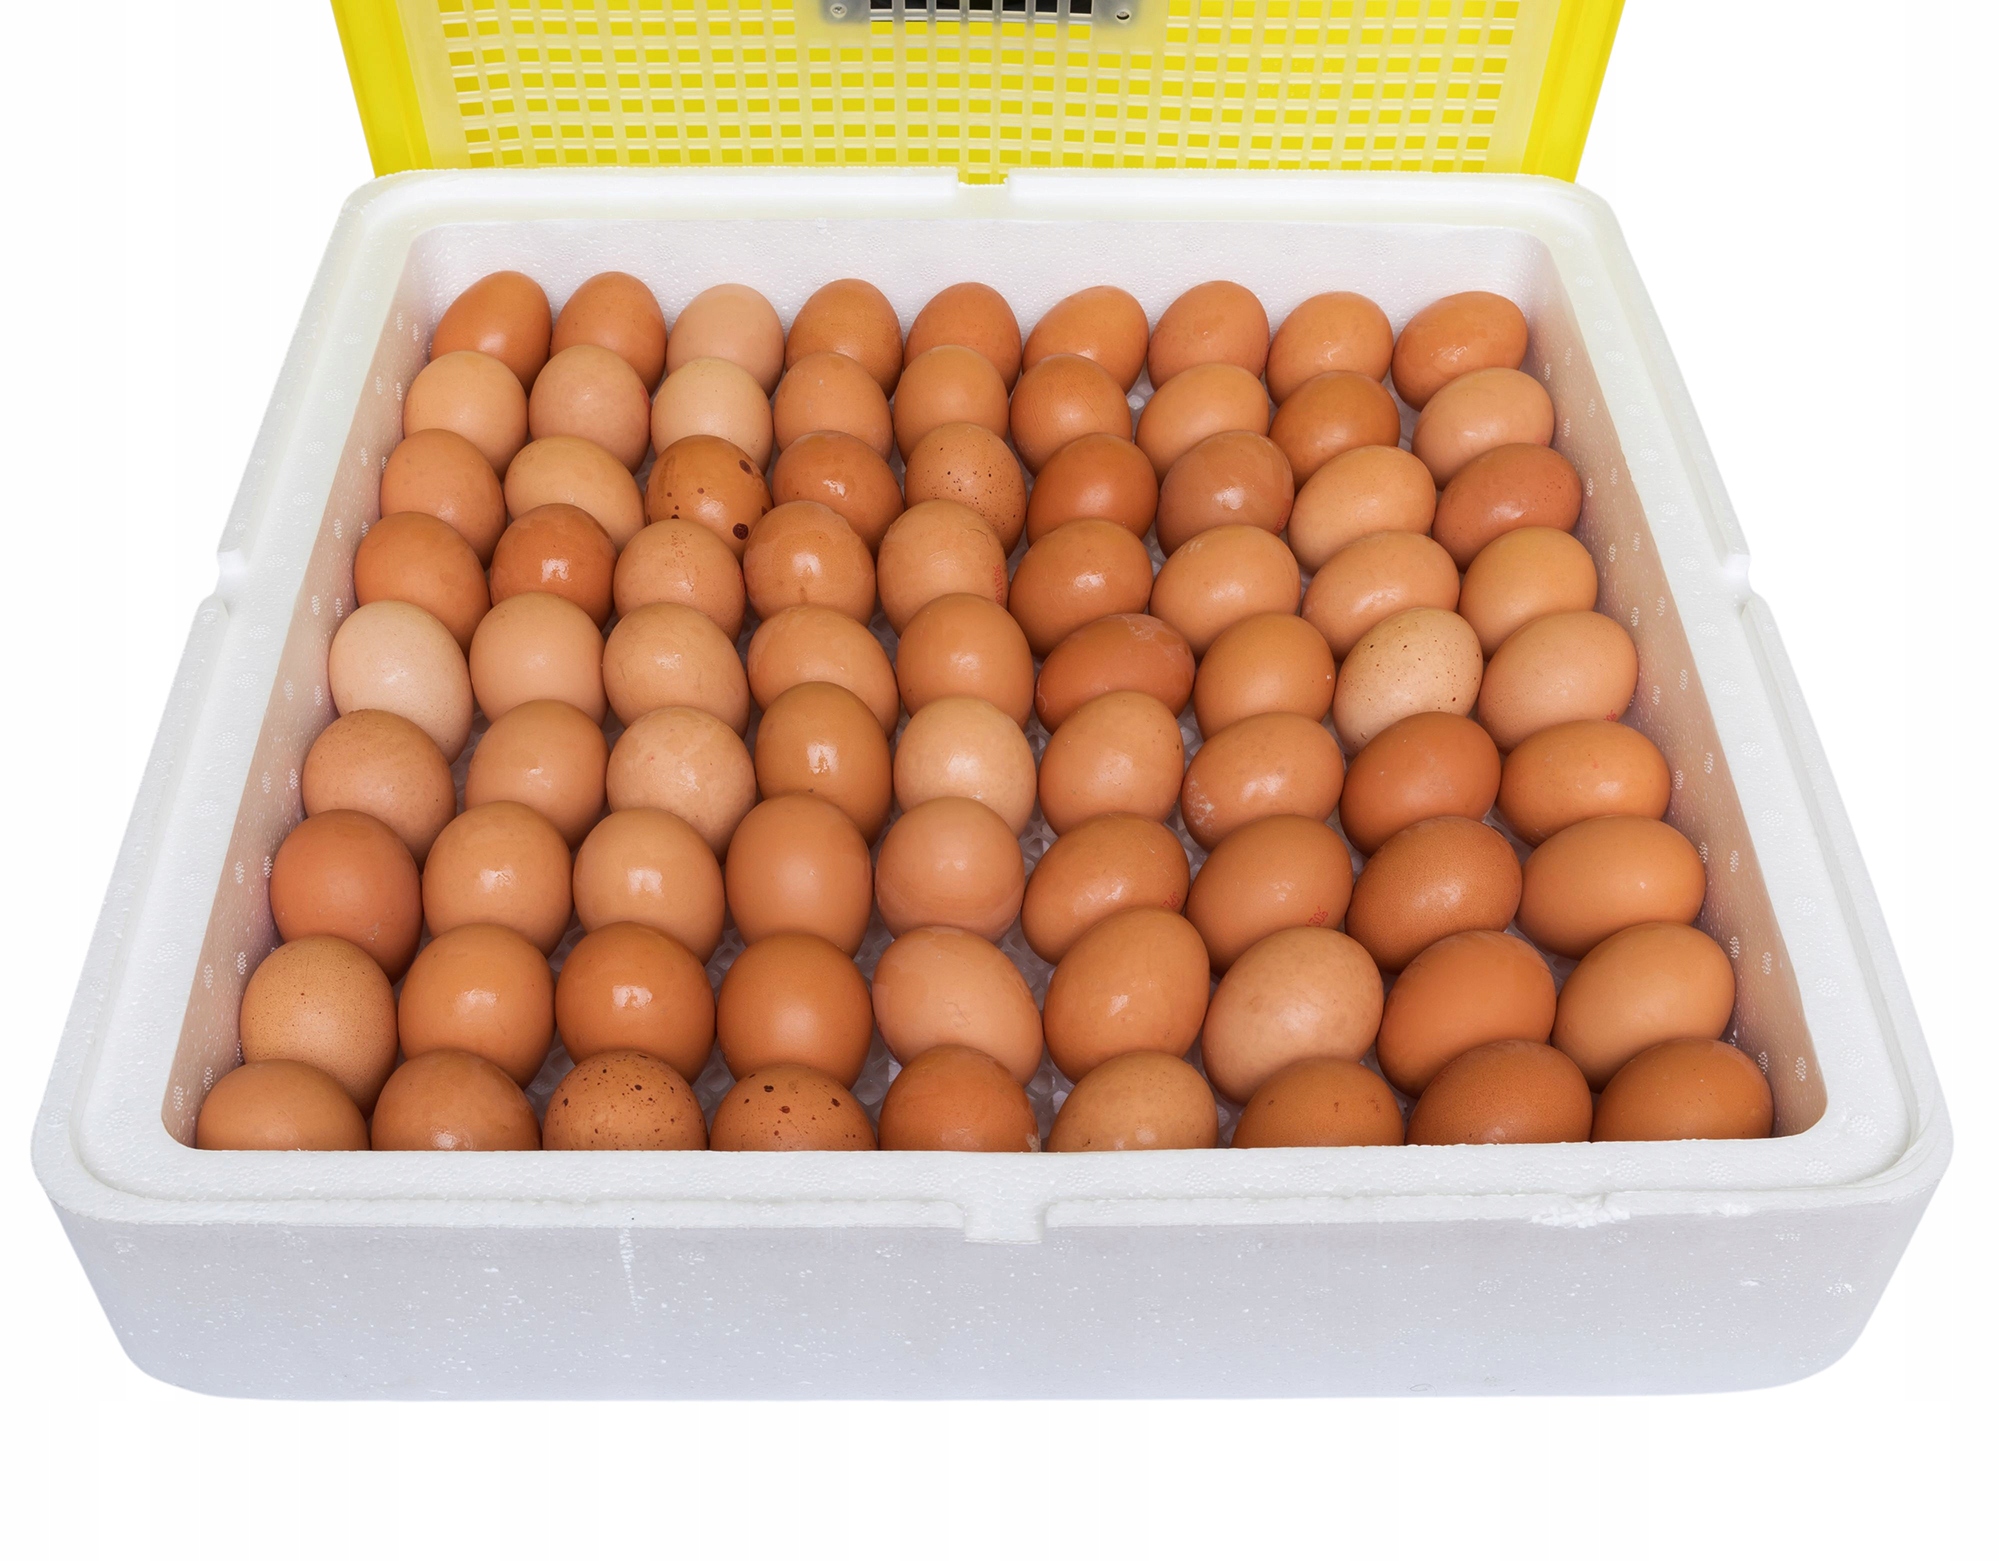 INKUBATOR KLUJNIK WYLĘGARKA JAJ WYLĘGU DROBIU 88 j Przeznaczenie jaja kurze jaja perlicze jaja kacze jaja gęsie jaja indycze jaja pawie jaja przepiórcze uniwersalne